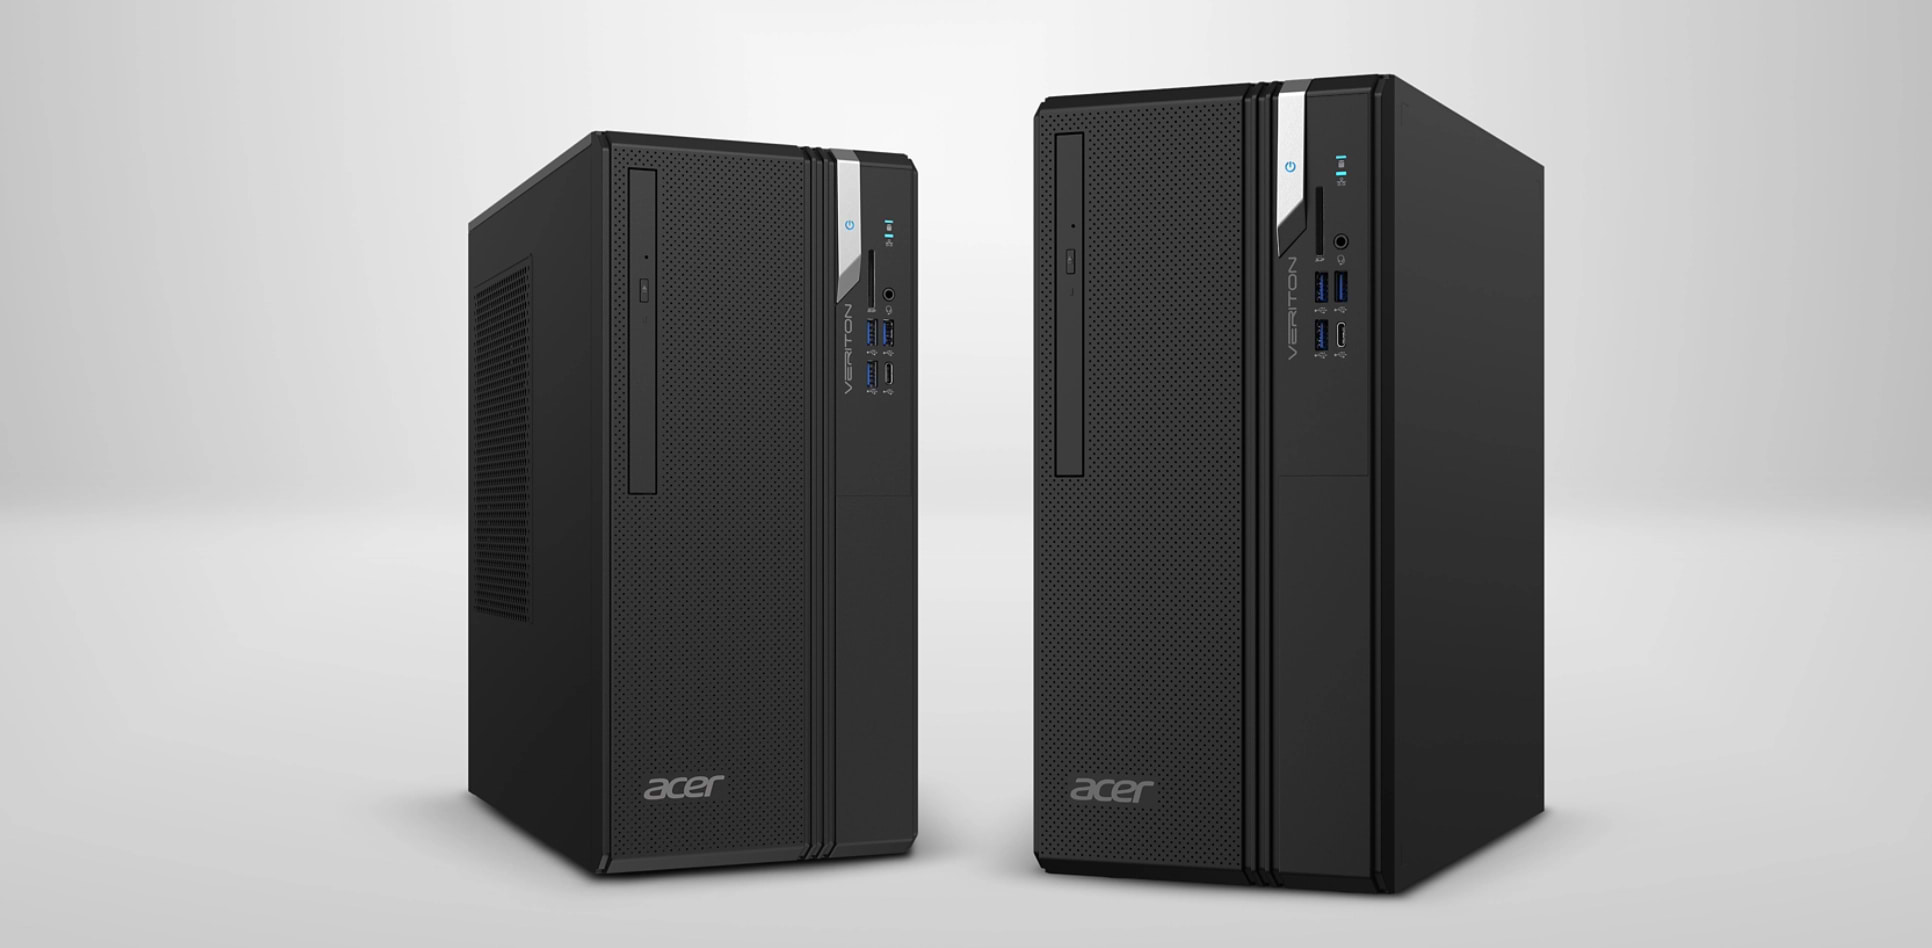 מחשב נייח Acer Veriton VS2710G DT.VY4ET.003 - Core i3-13100 256GB SSD 8GB RAM - צבע שחור שלוש שנות אחריות ע"י היבואן הרשמי